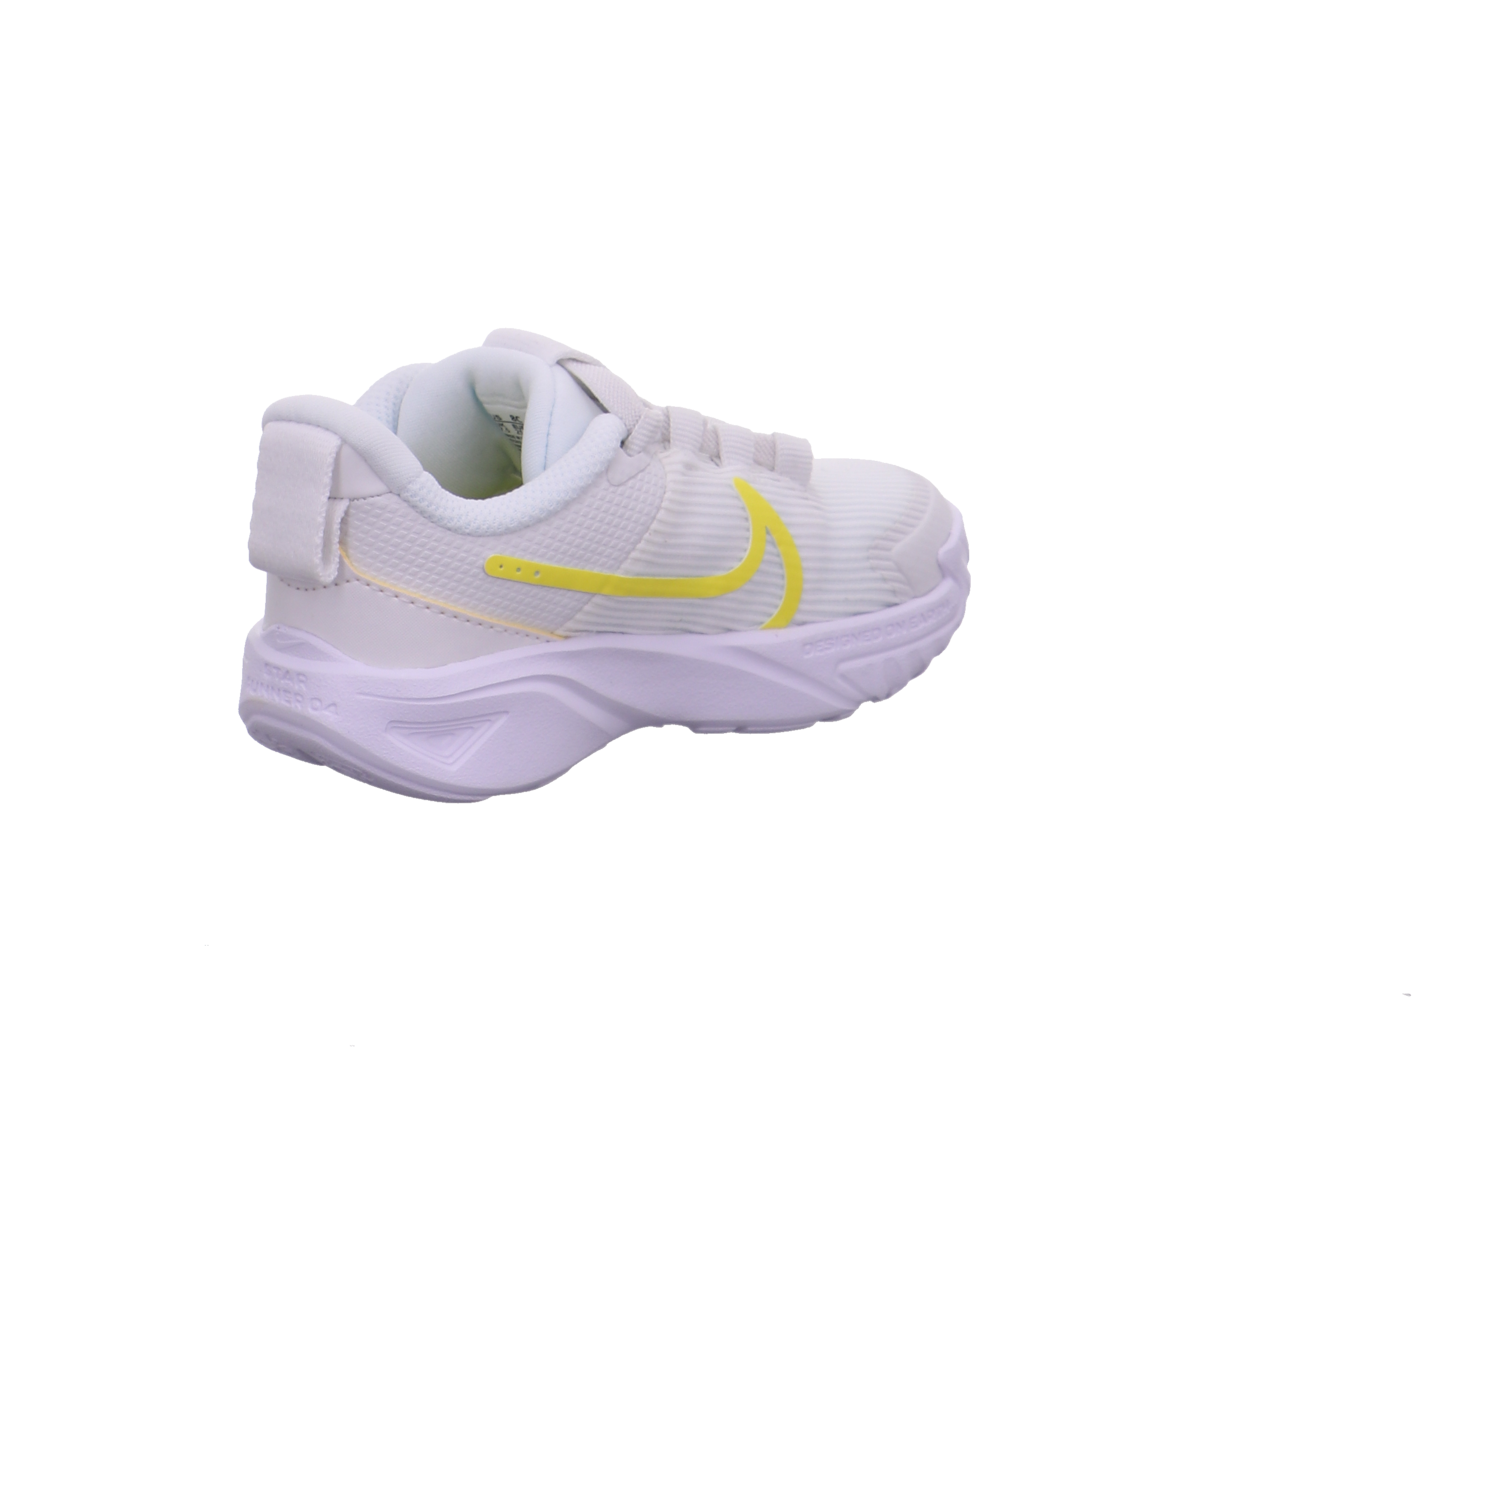 Nike Krabbel- und Lauflernschuhe weiß kombi Bild5